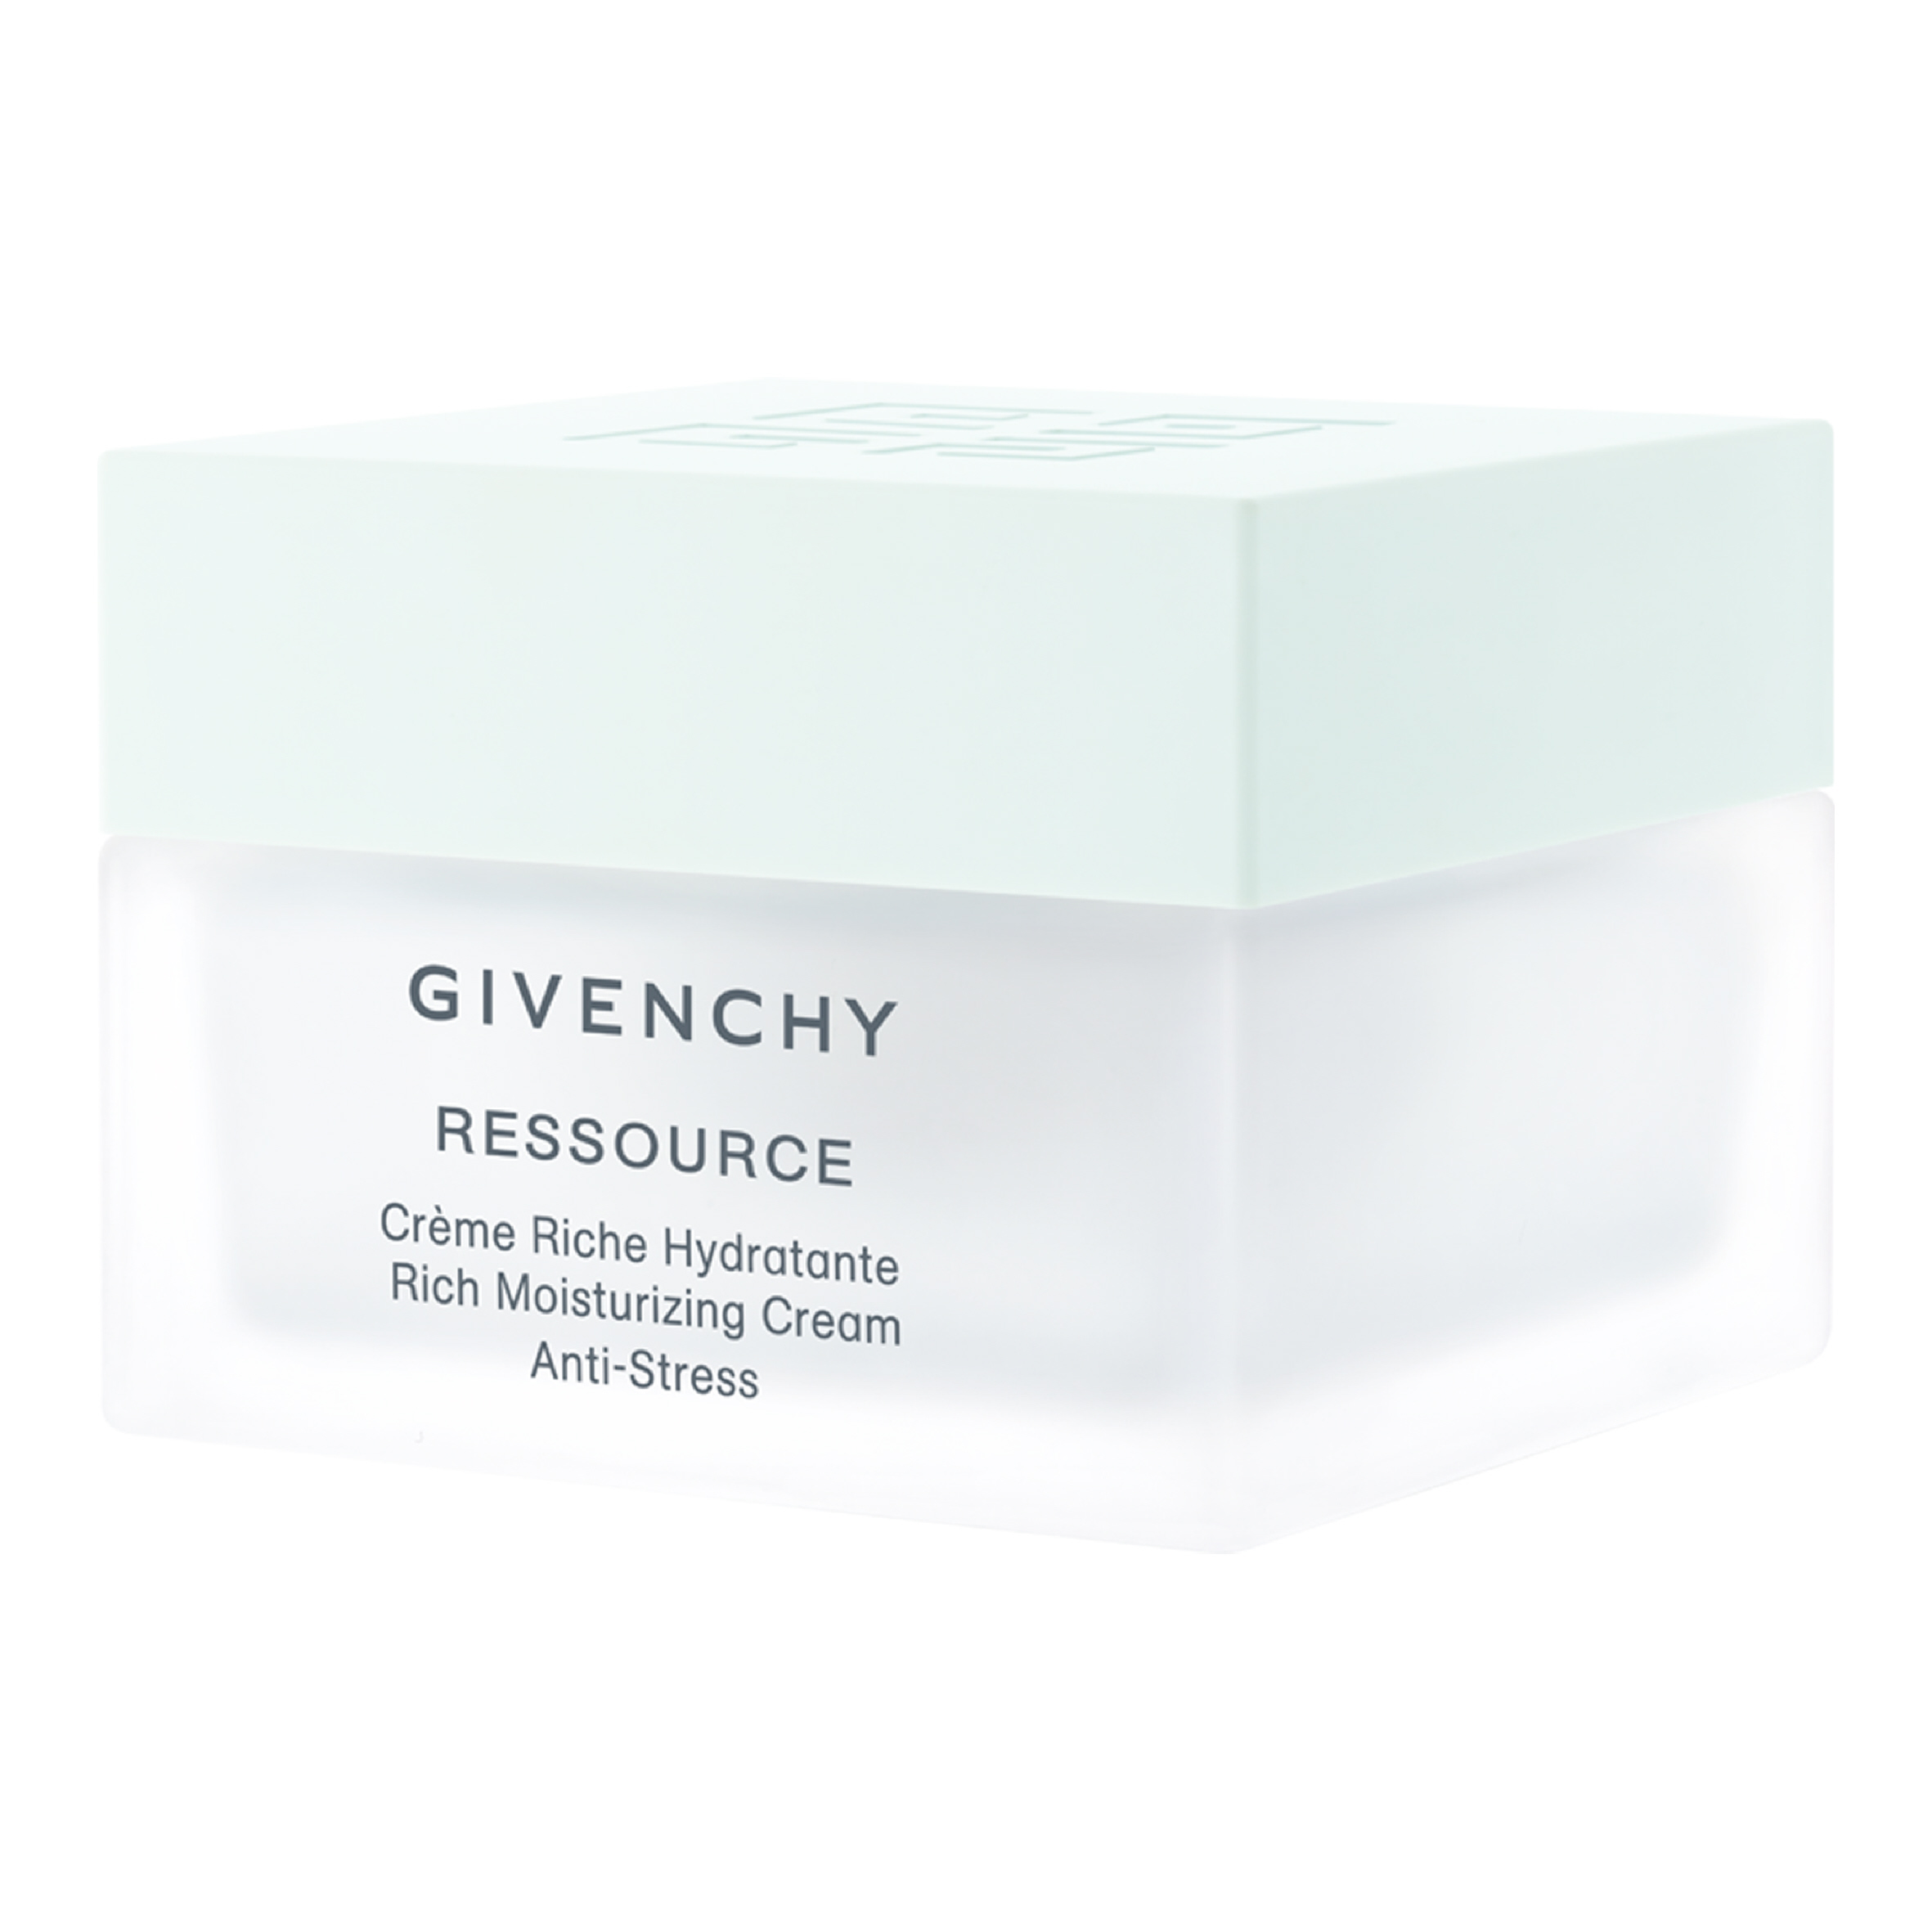 Ressource, una auténtica innovación de Givenchy